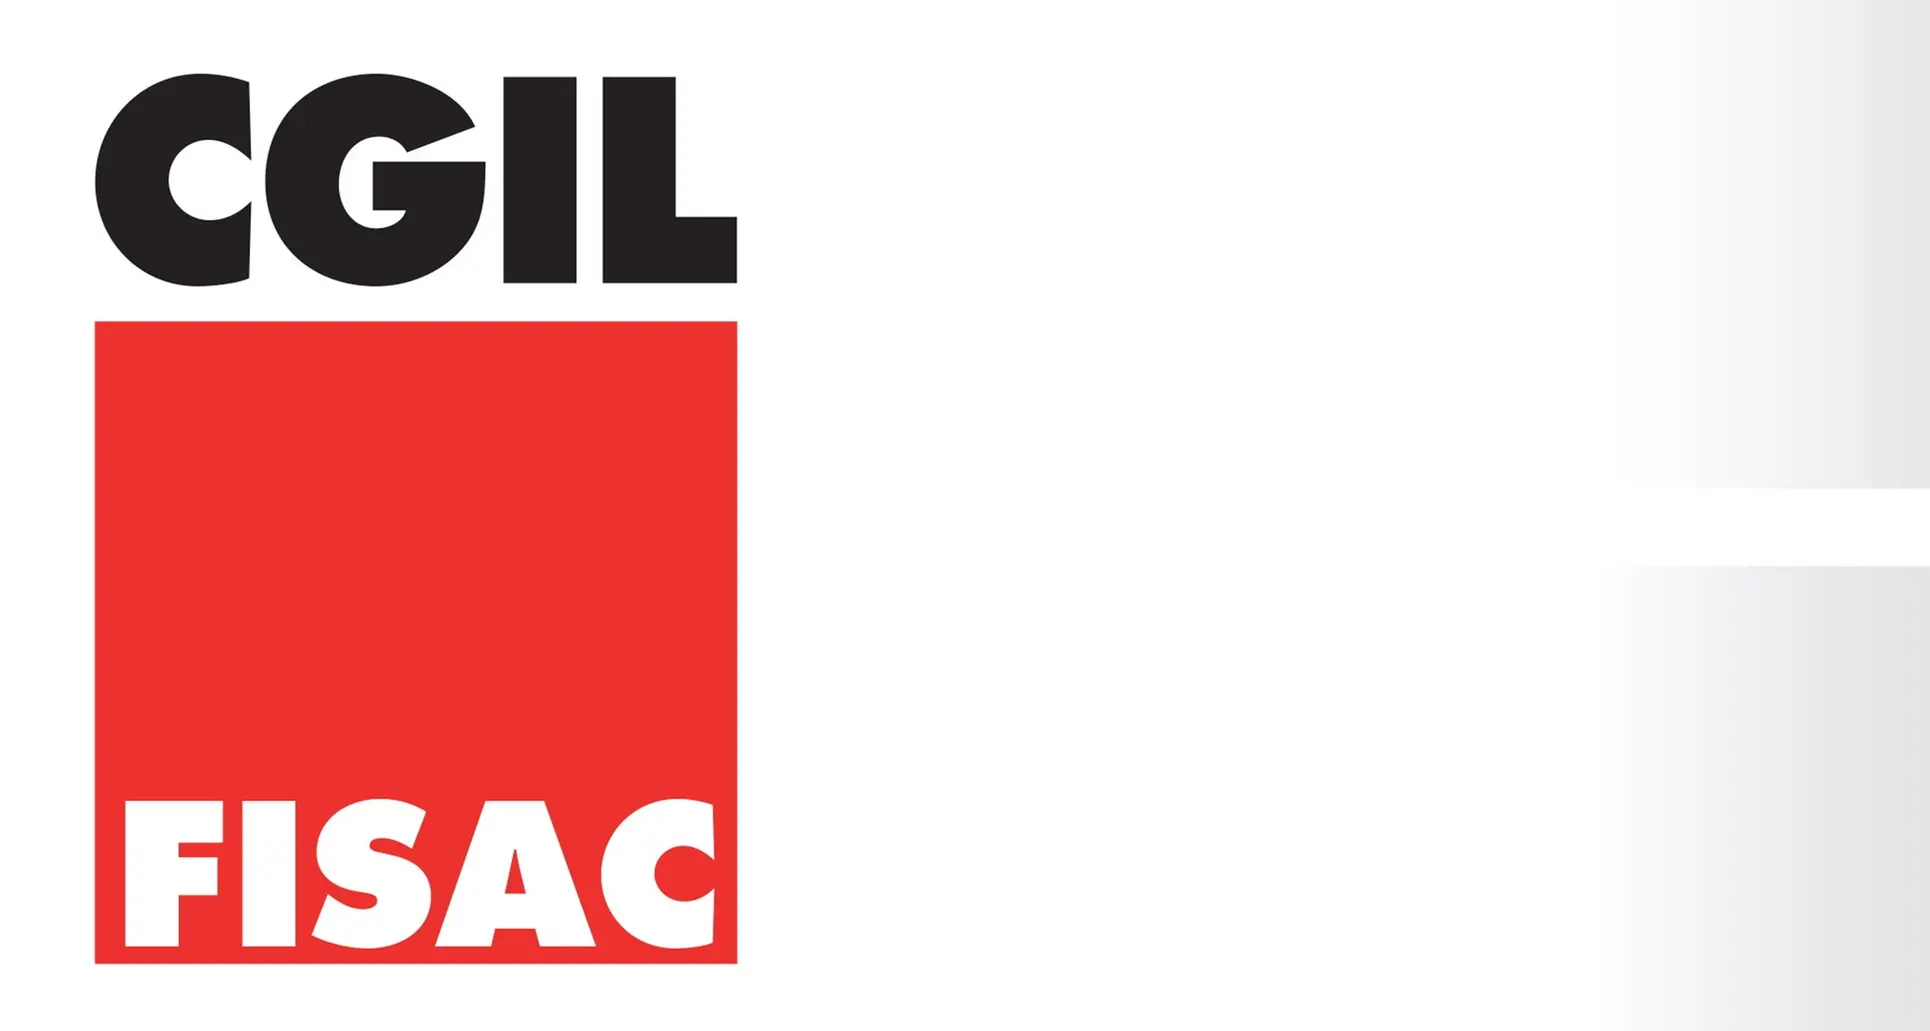 FISAC CGIL, Lavoratori Assicurazioni e Credito